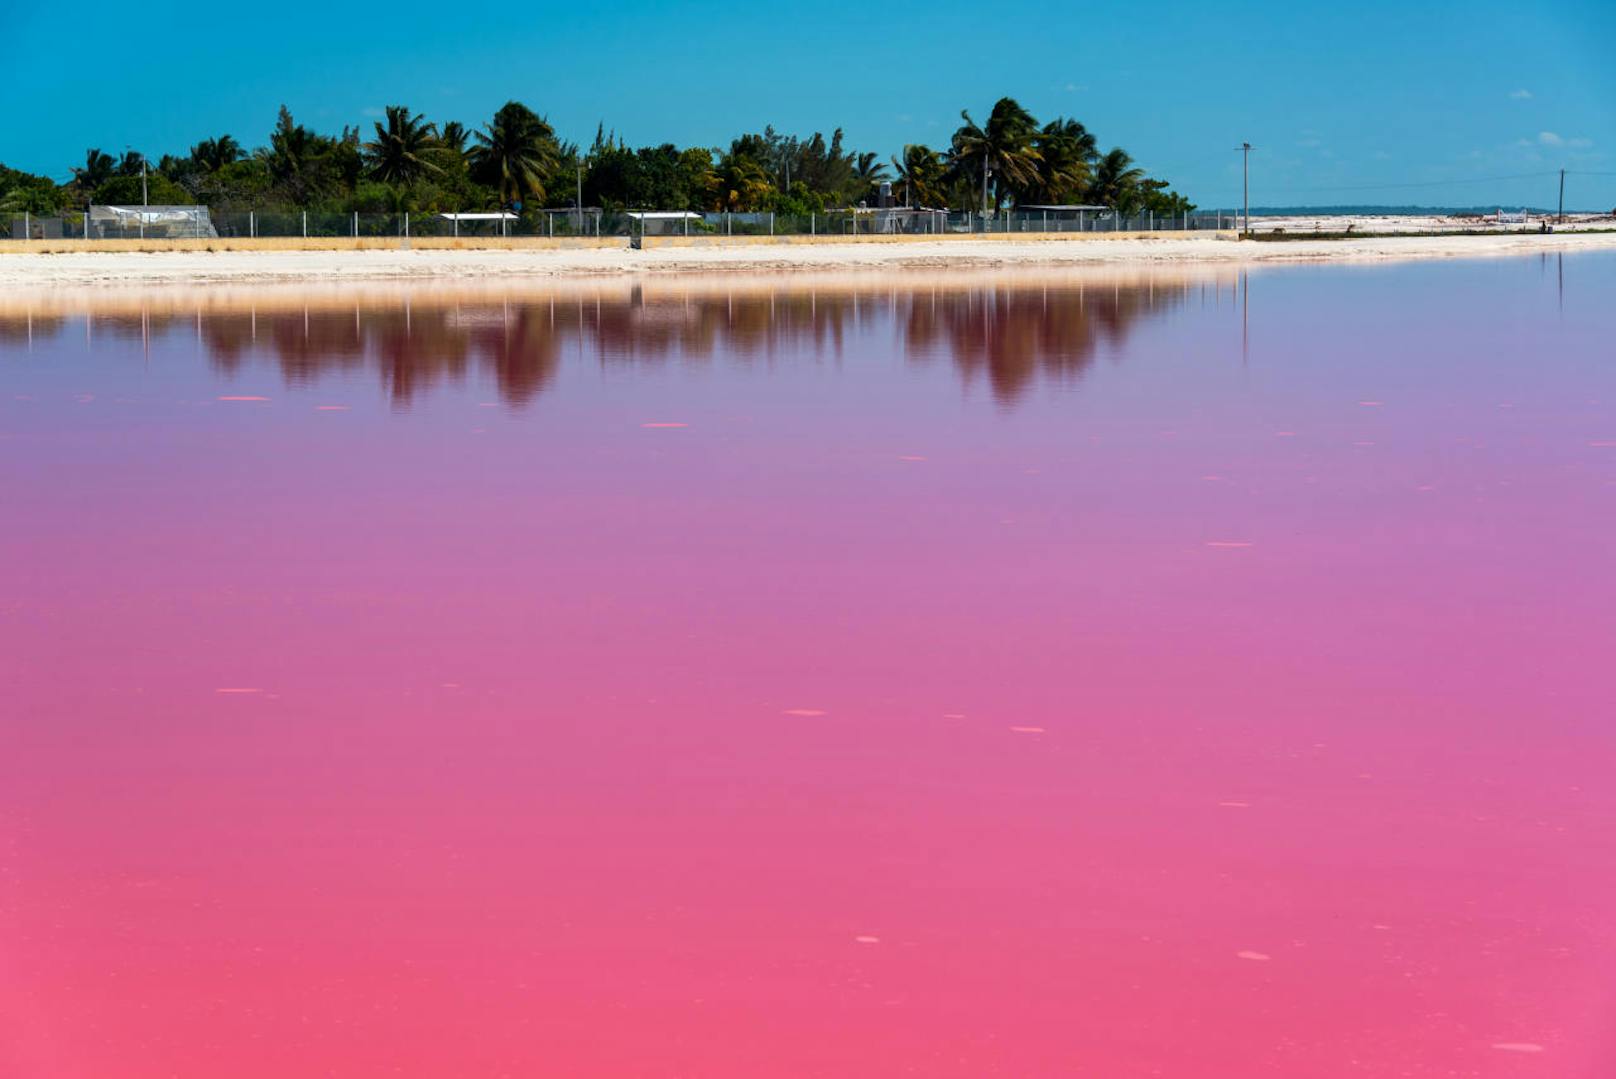 Die rosarote Farbe kommt nicht etwa von einer Chemikalie, sondern von Algen, Mikroorganismen und Salzwasserkrebsen, die den Farbstoff Beta-Carotin produzieren